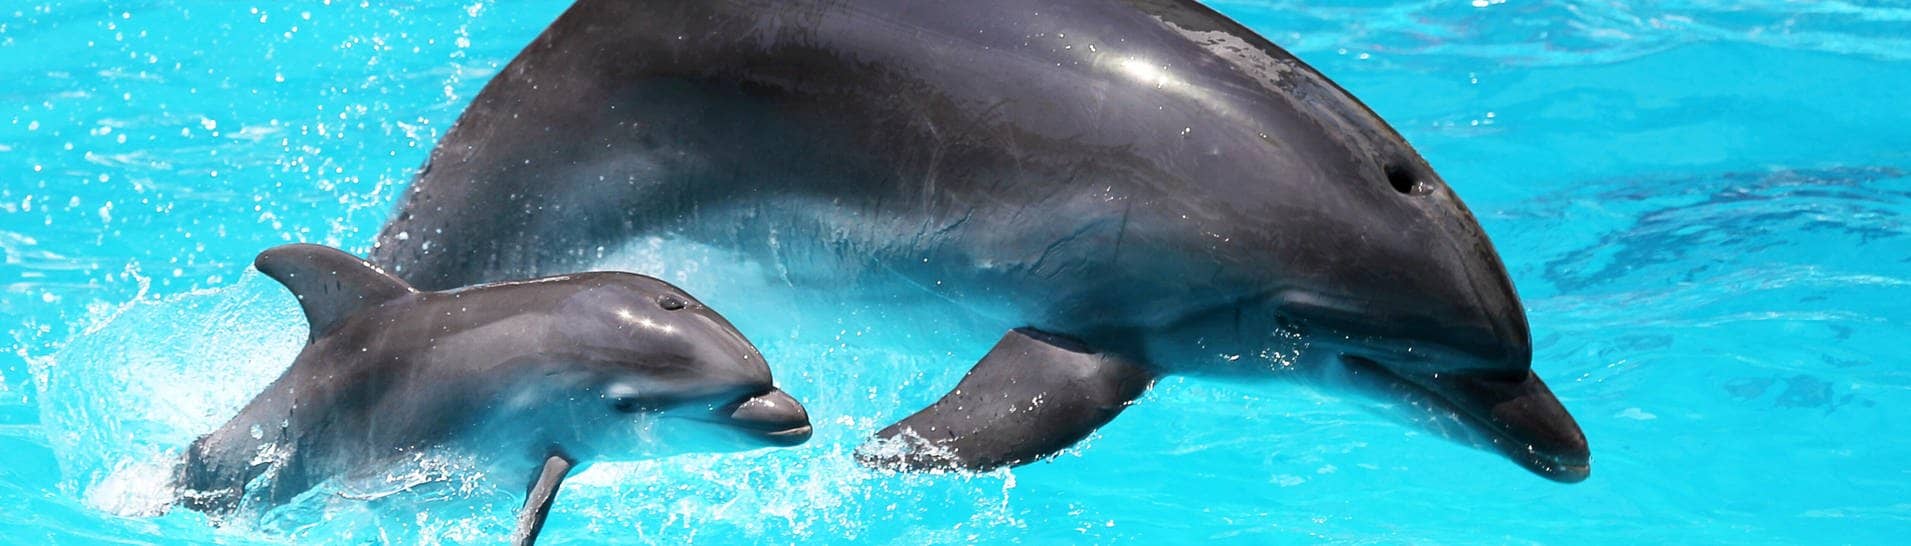 Eine Delfin-Mutter mit ihrem Jungen im Wasser. Delfine nutzen offenbar genau wie Menschen Babysprache, um mit ihren Kleinen zu kommunizieren.  (Foto: IMAGO, IMAGO / agefotostock)